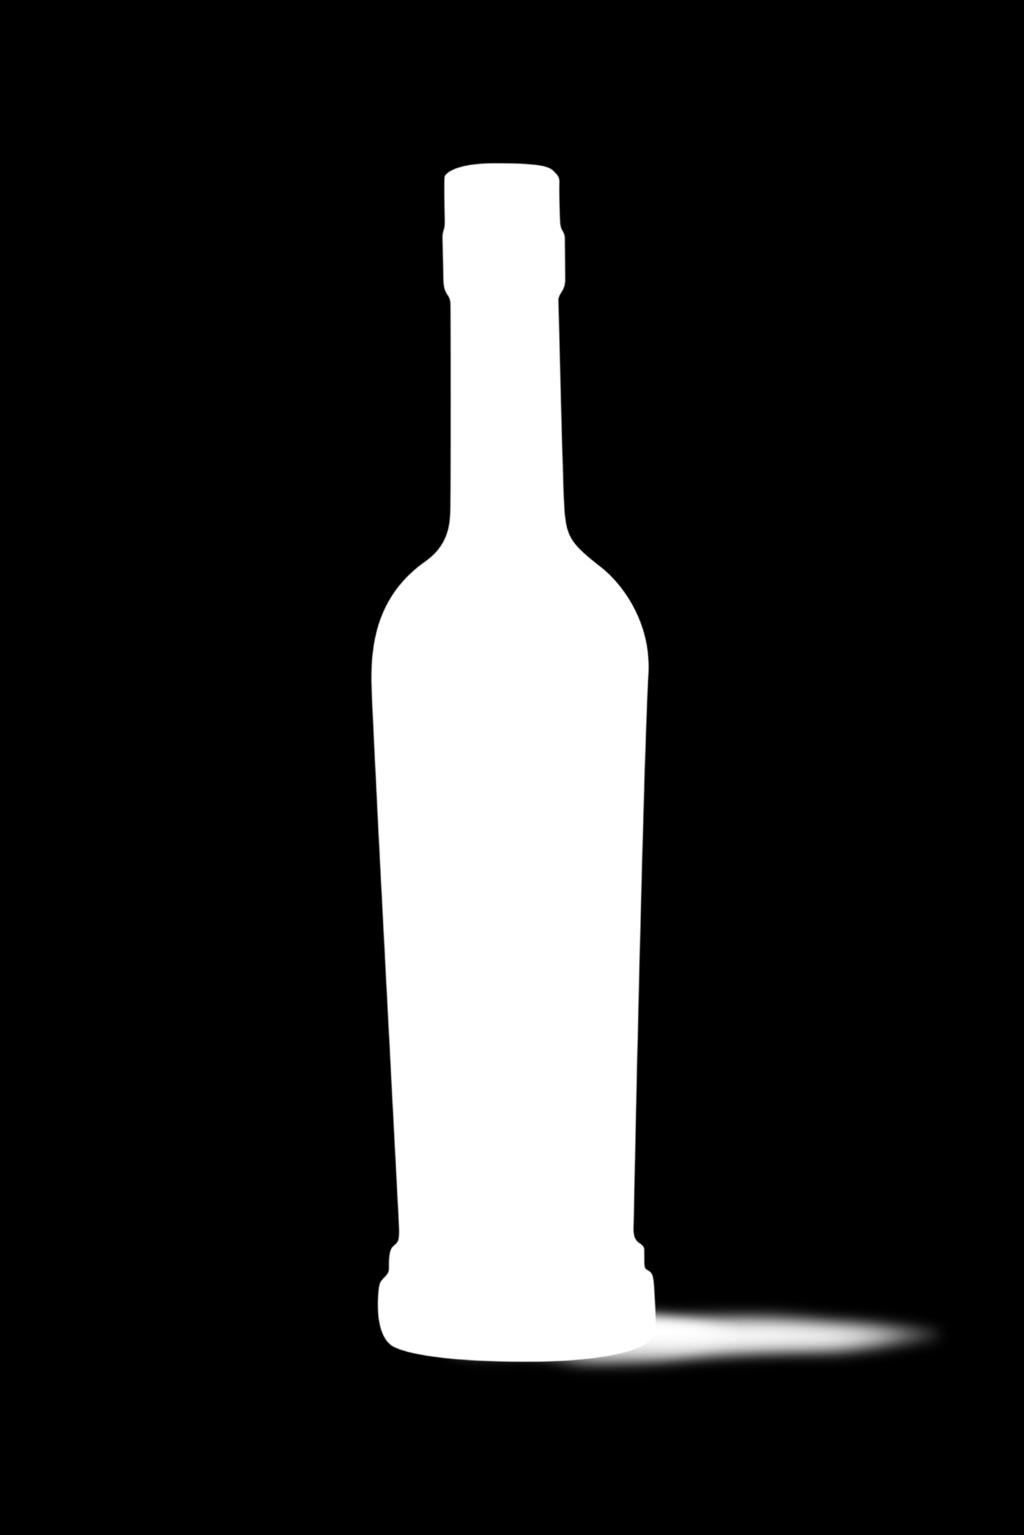 MANDORLÉ Liquore di Mandorle di Avola Liquore cremoso dal sapore dolce e delicato ottenuto utilizzando il cuore della Mandorla di Avola.